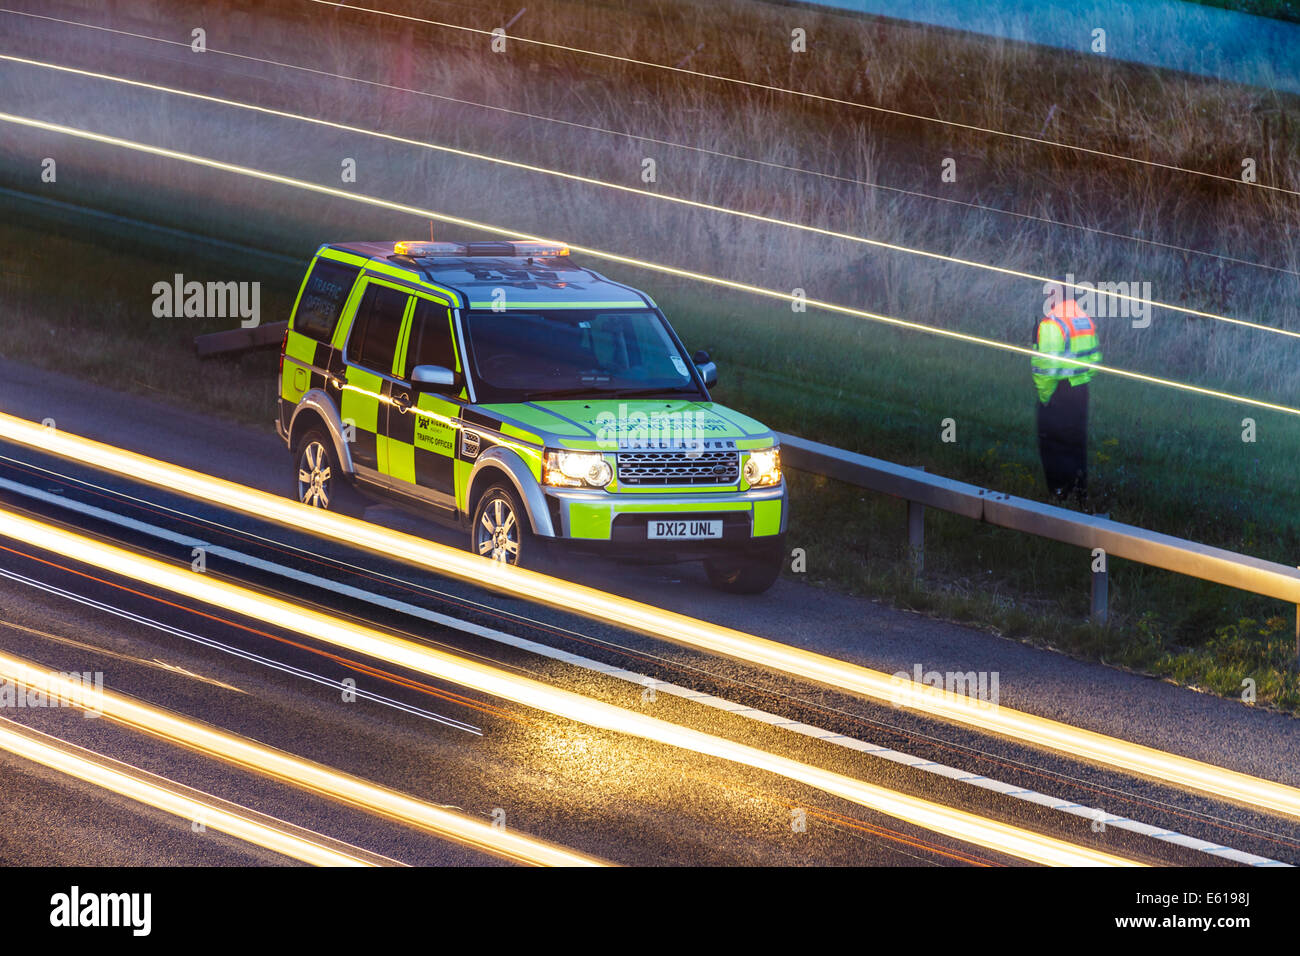 Un véhicule landrover Highways Agency assiste à la scène d'un incident de trafic sur une autoroute britannique au crépuscule. Banque D'Images